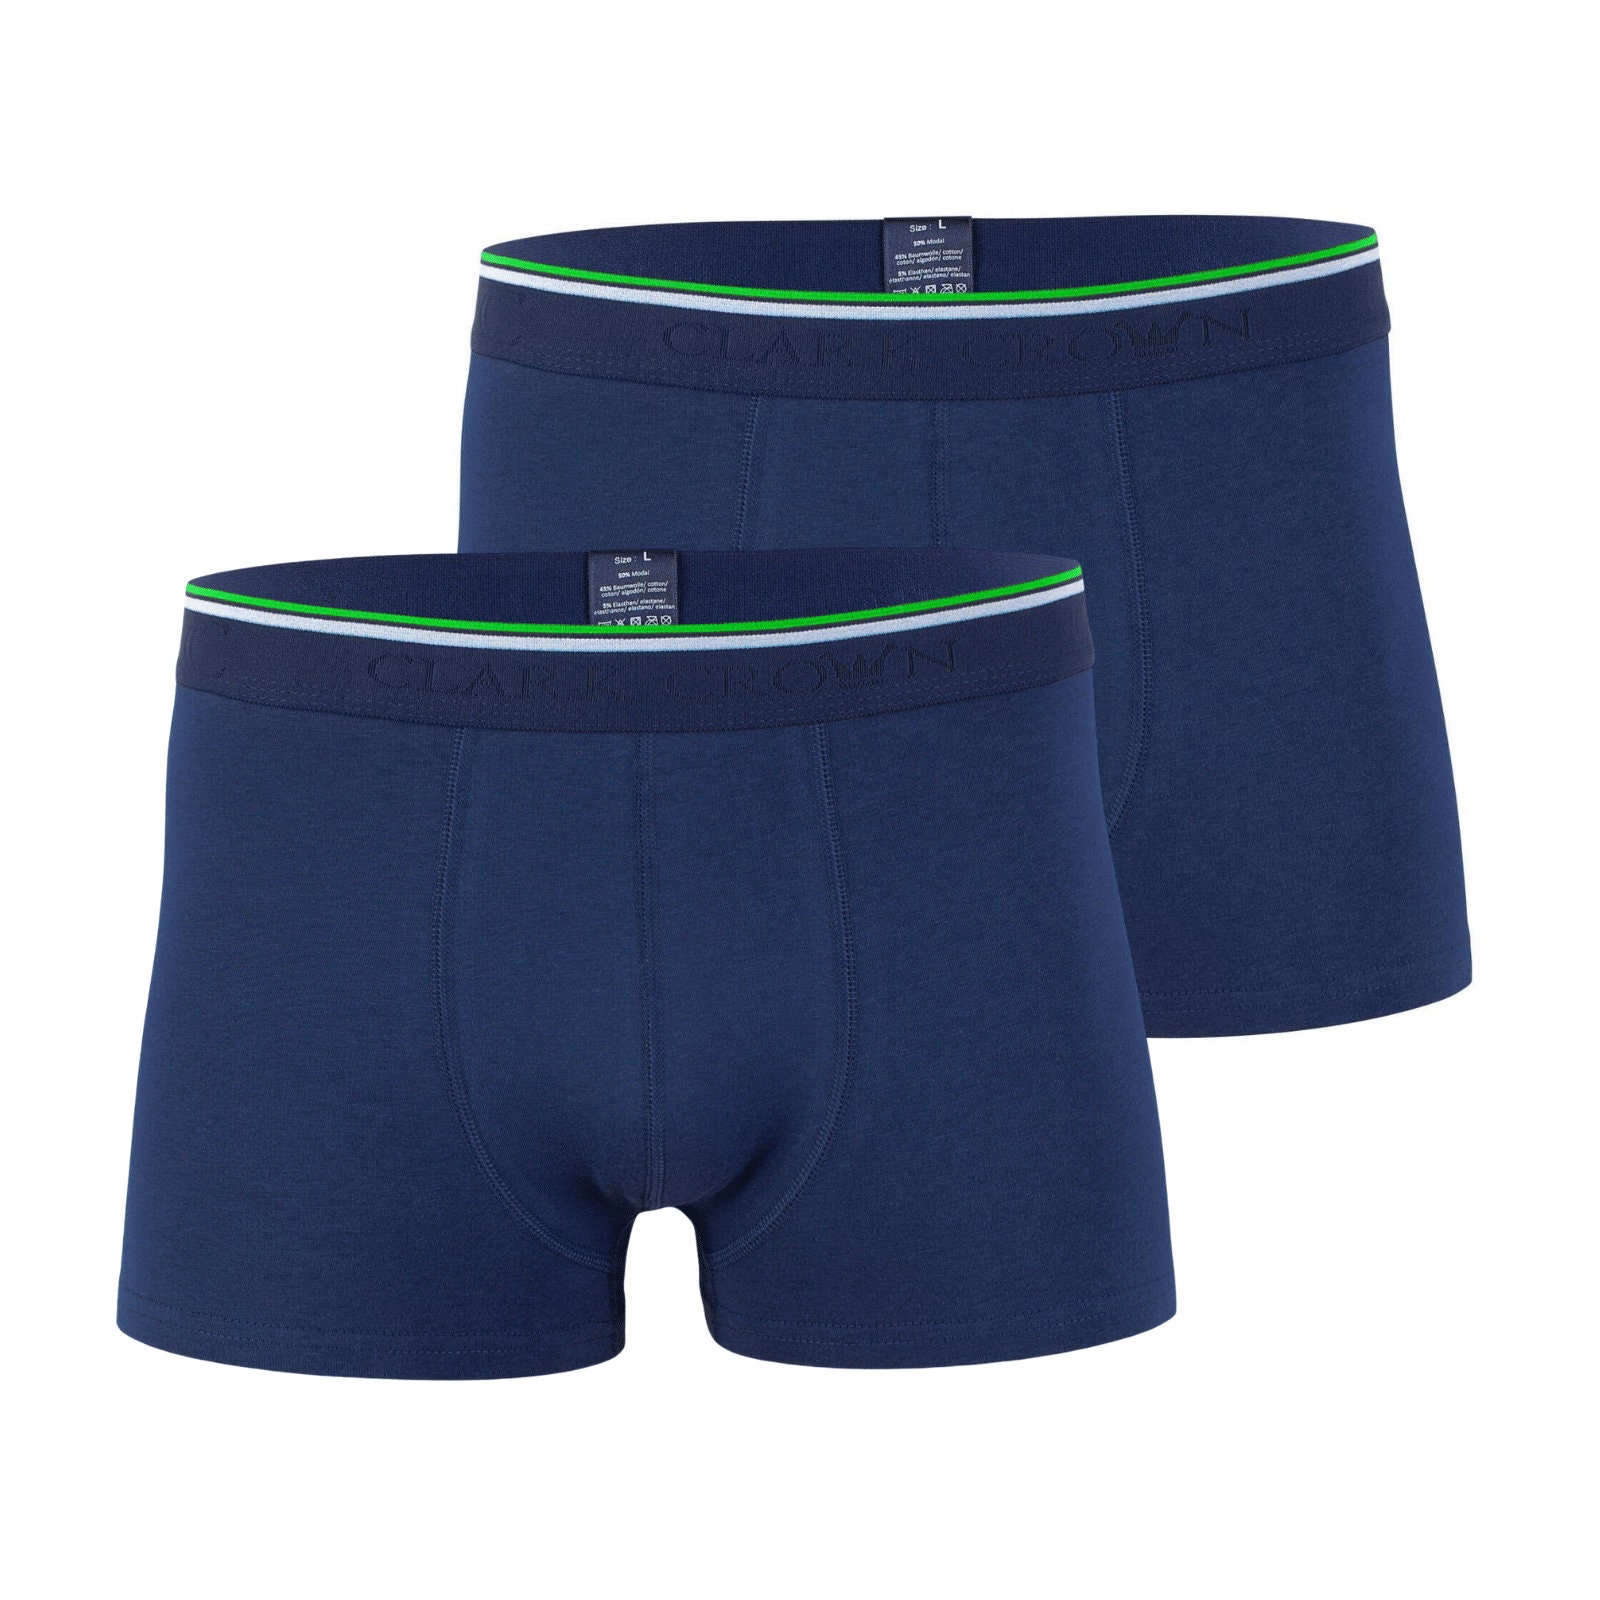 Men's Bamboo Cotton Blended Underwear Boxer Trunks 